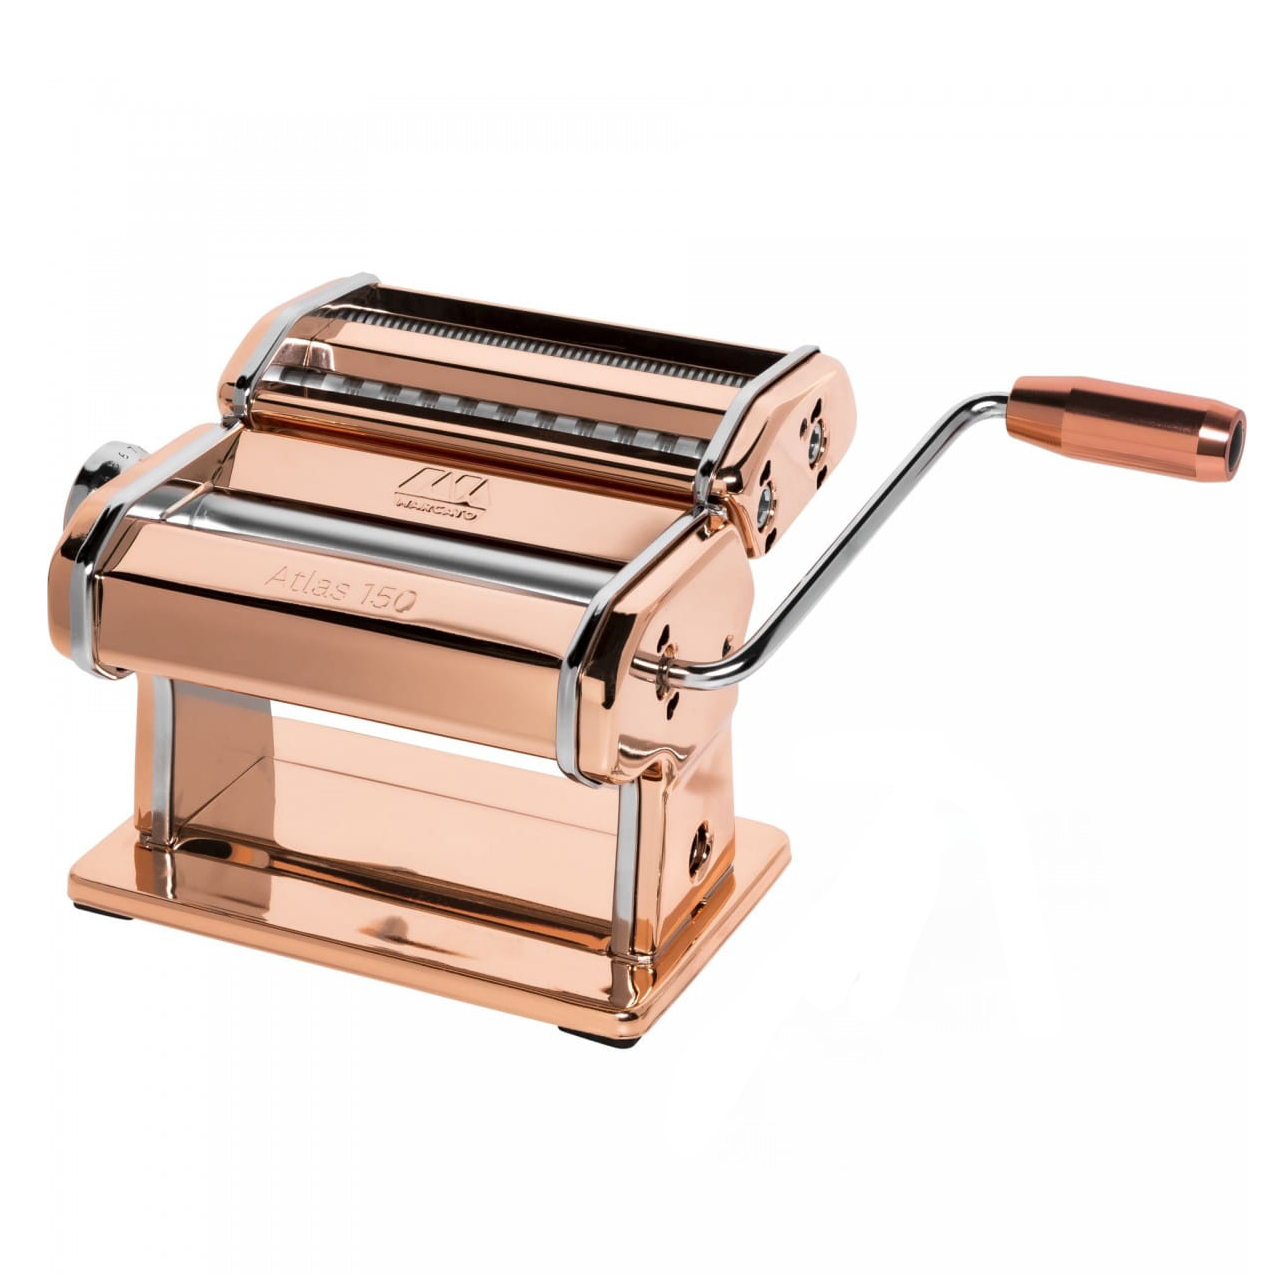 Marcato Atlas 150 Pasta Machine – Copper